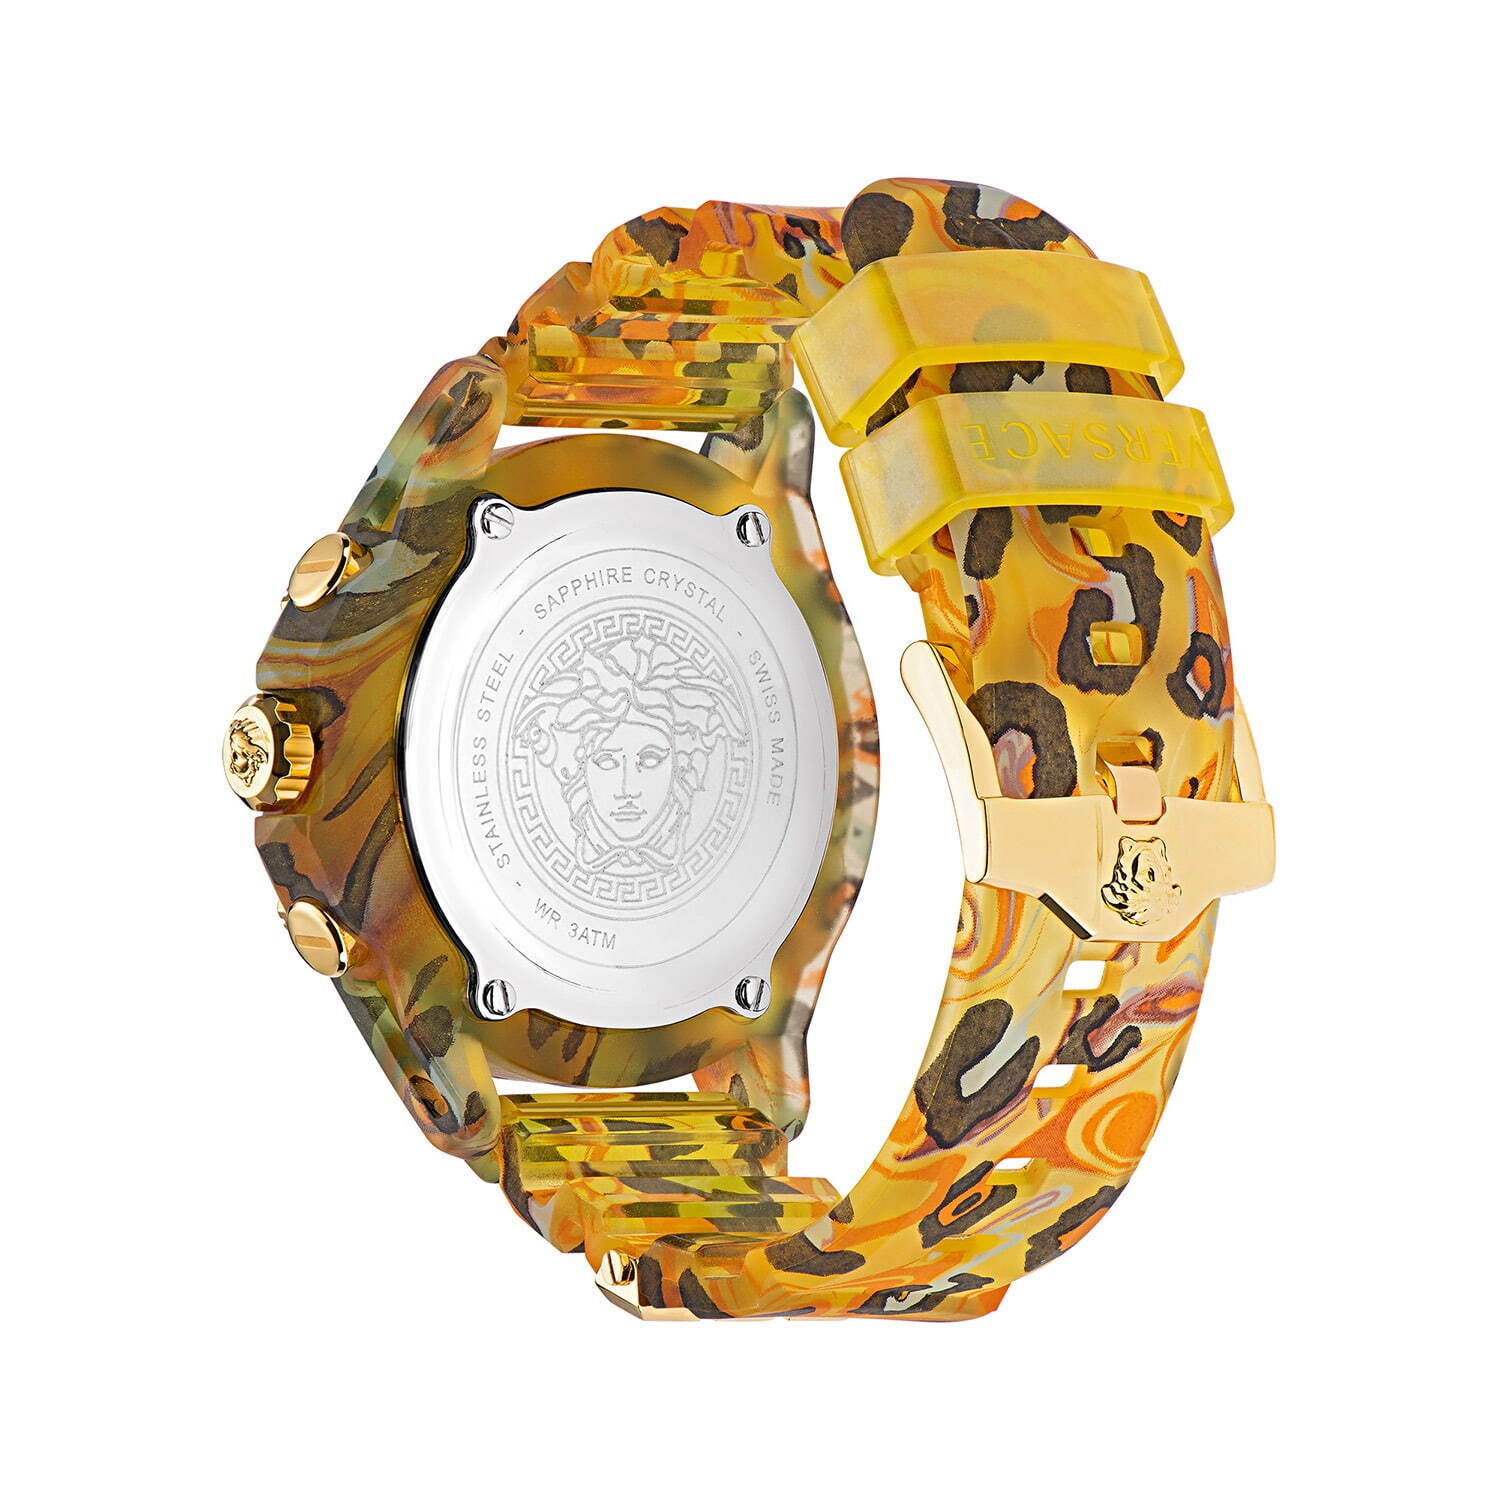 ヴェルサーチェの腕時計「アイコン アクティブ」新色、カモフラージュ